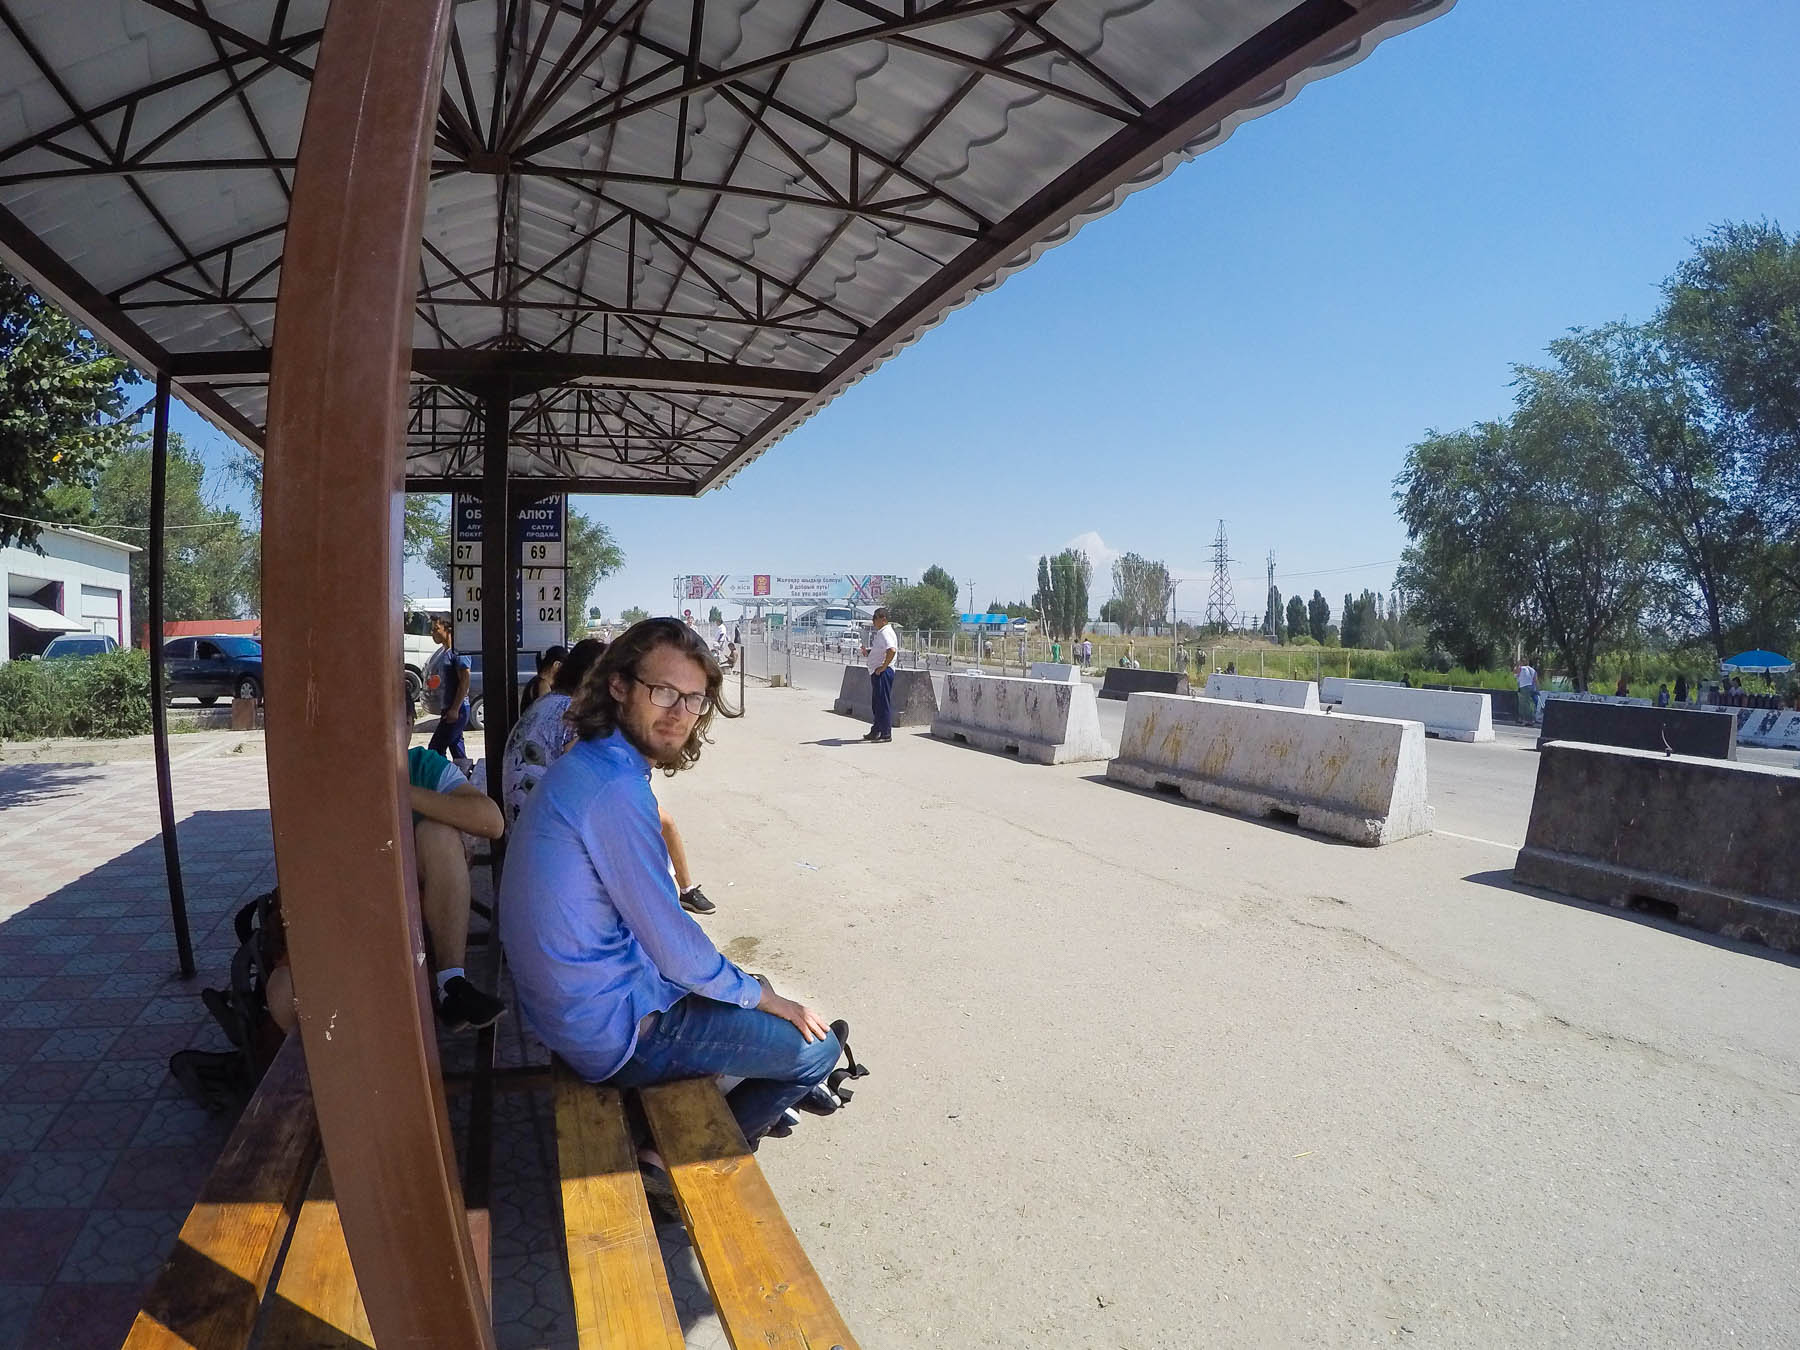 Waiting for a marshrutka at the Kazakhstan - Kyrgyzstan border crossing at Kordai